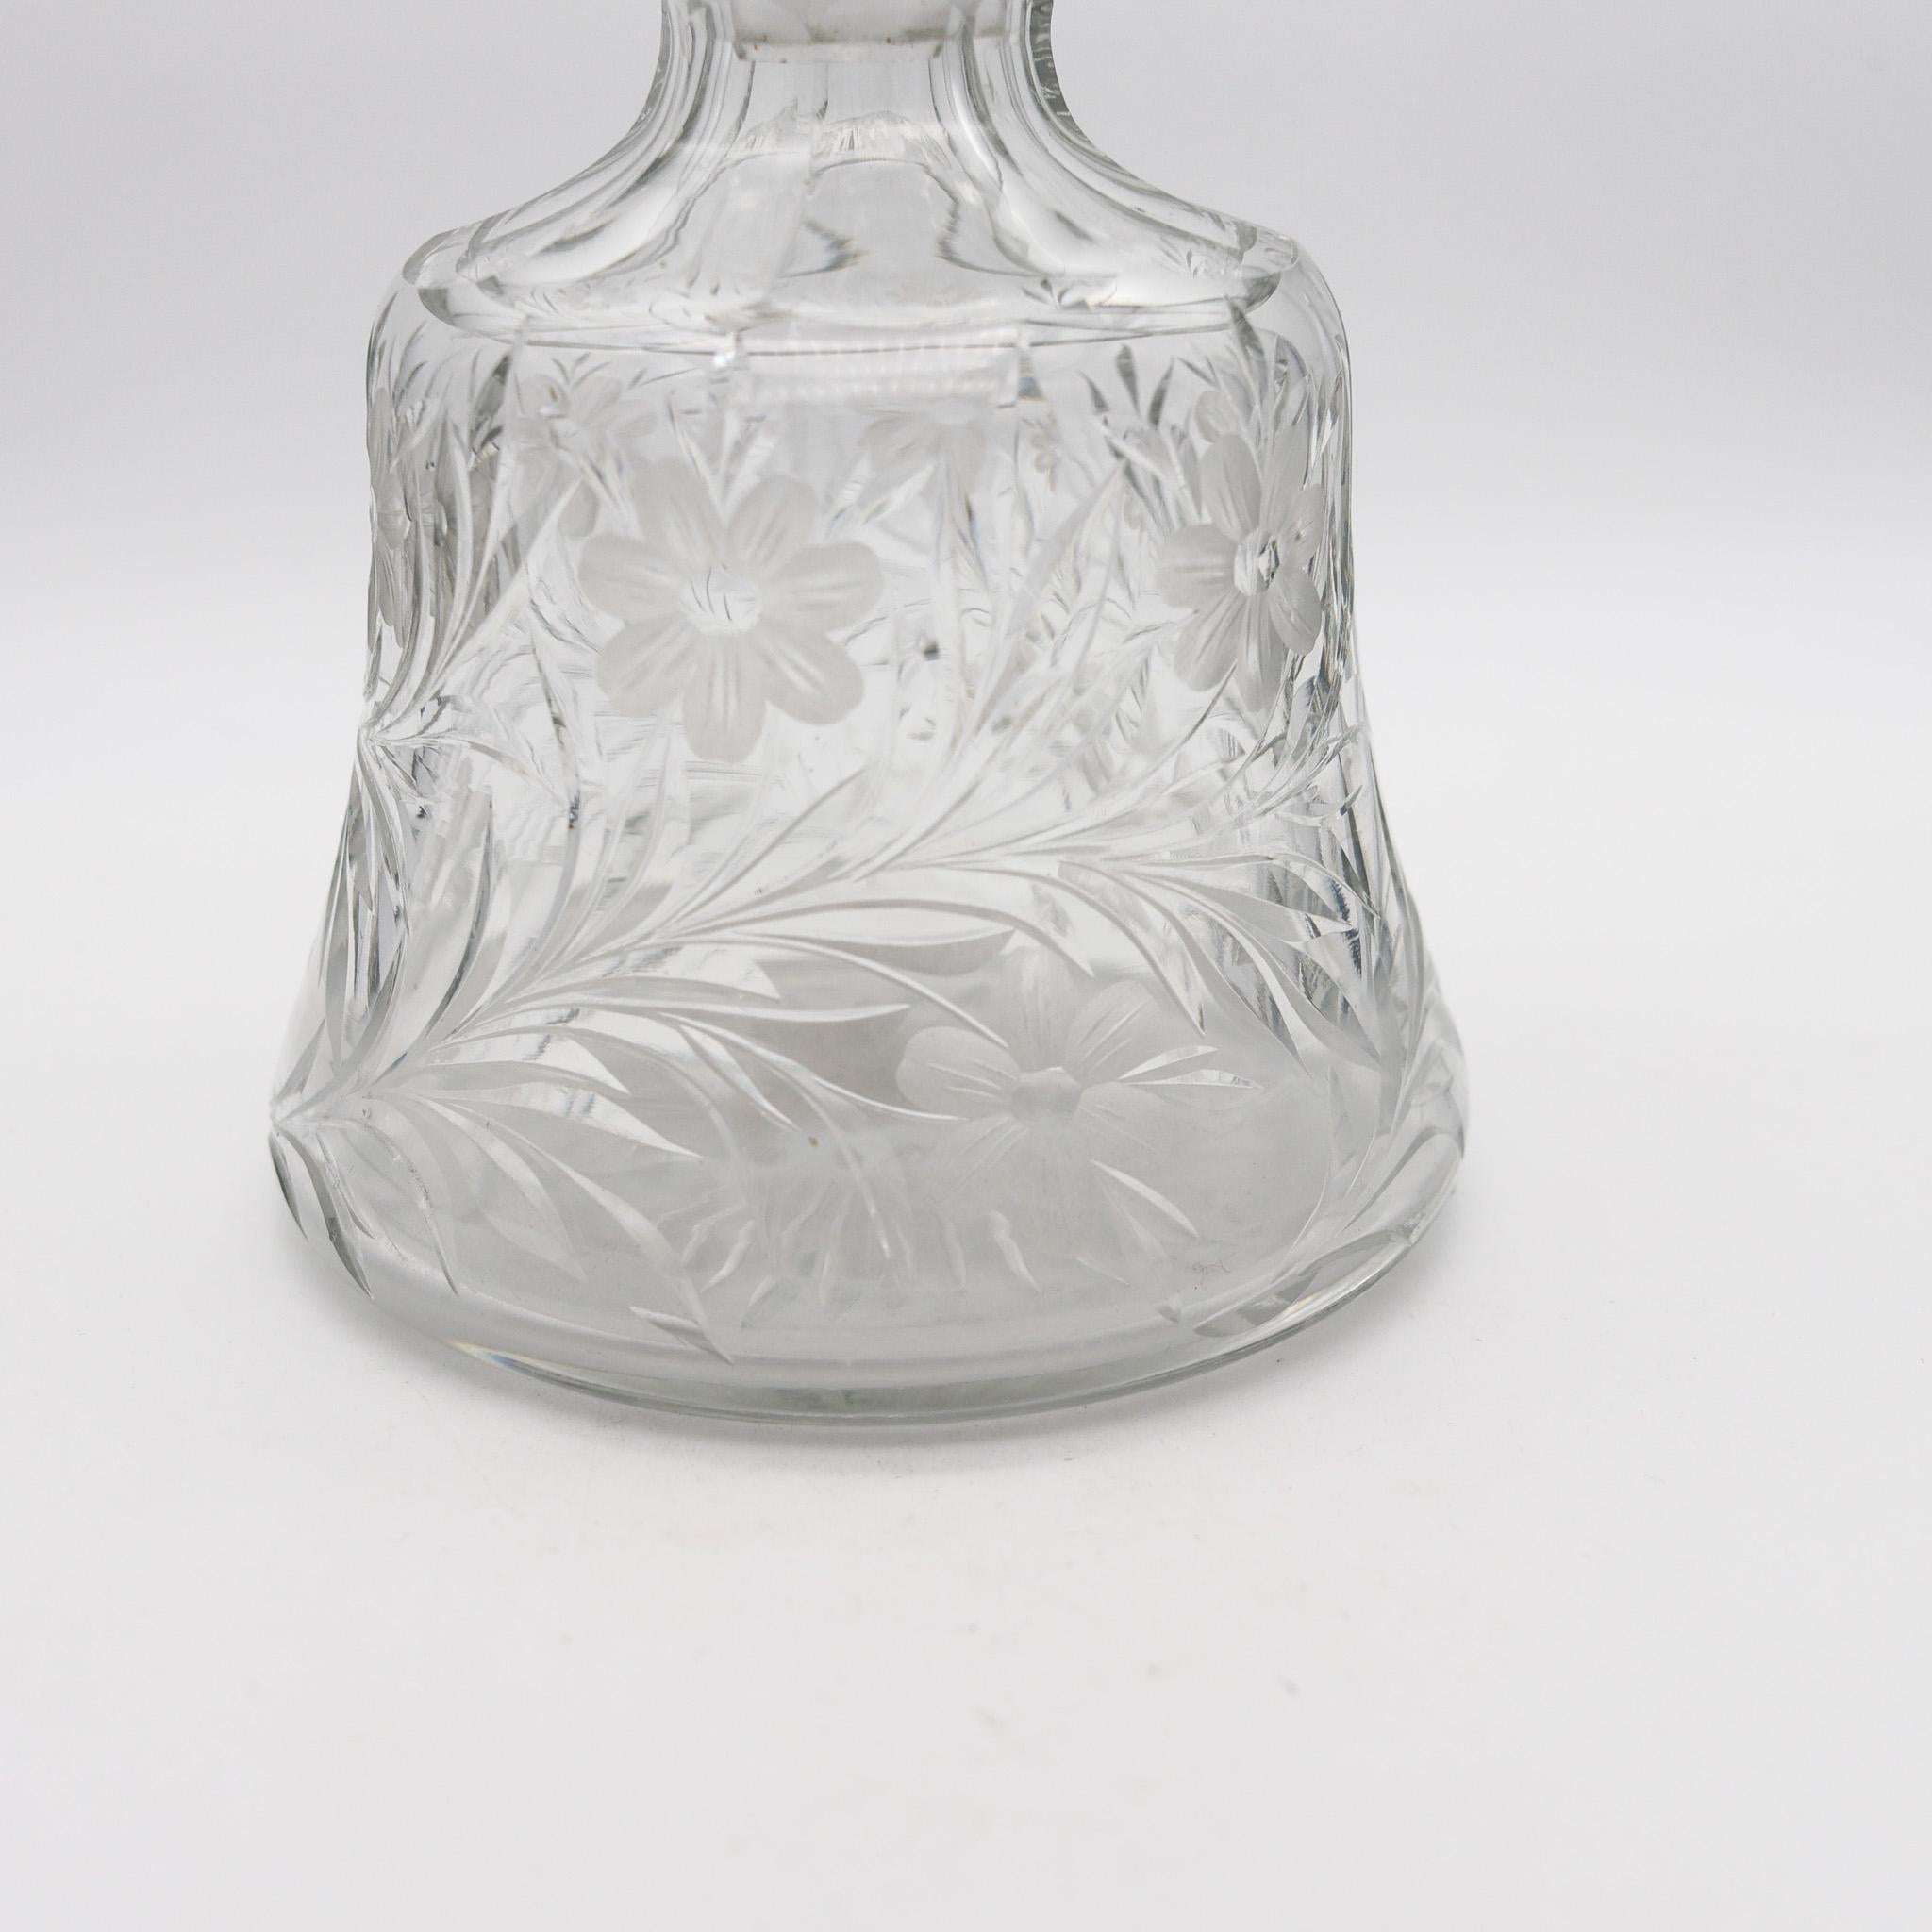 American Edwardian 1905 Guilloché Enamel Perfume Bottle In .925 Sterling And Cut Glass For Sale